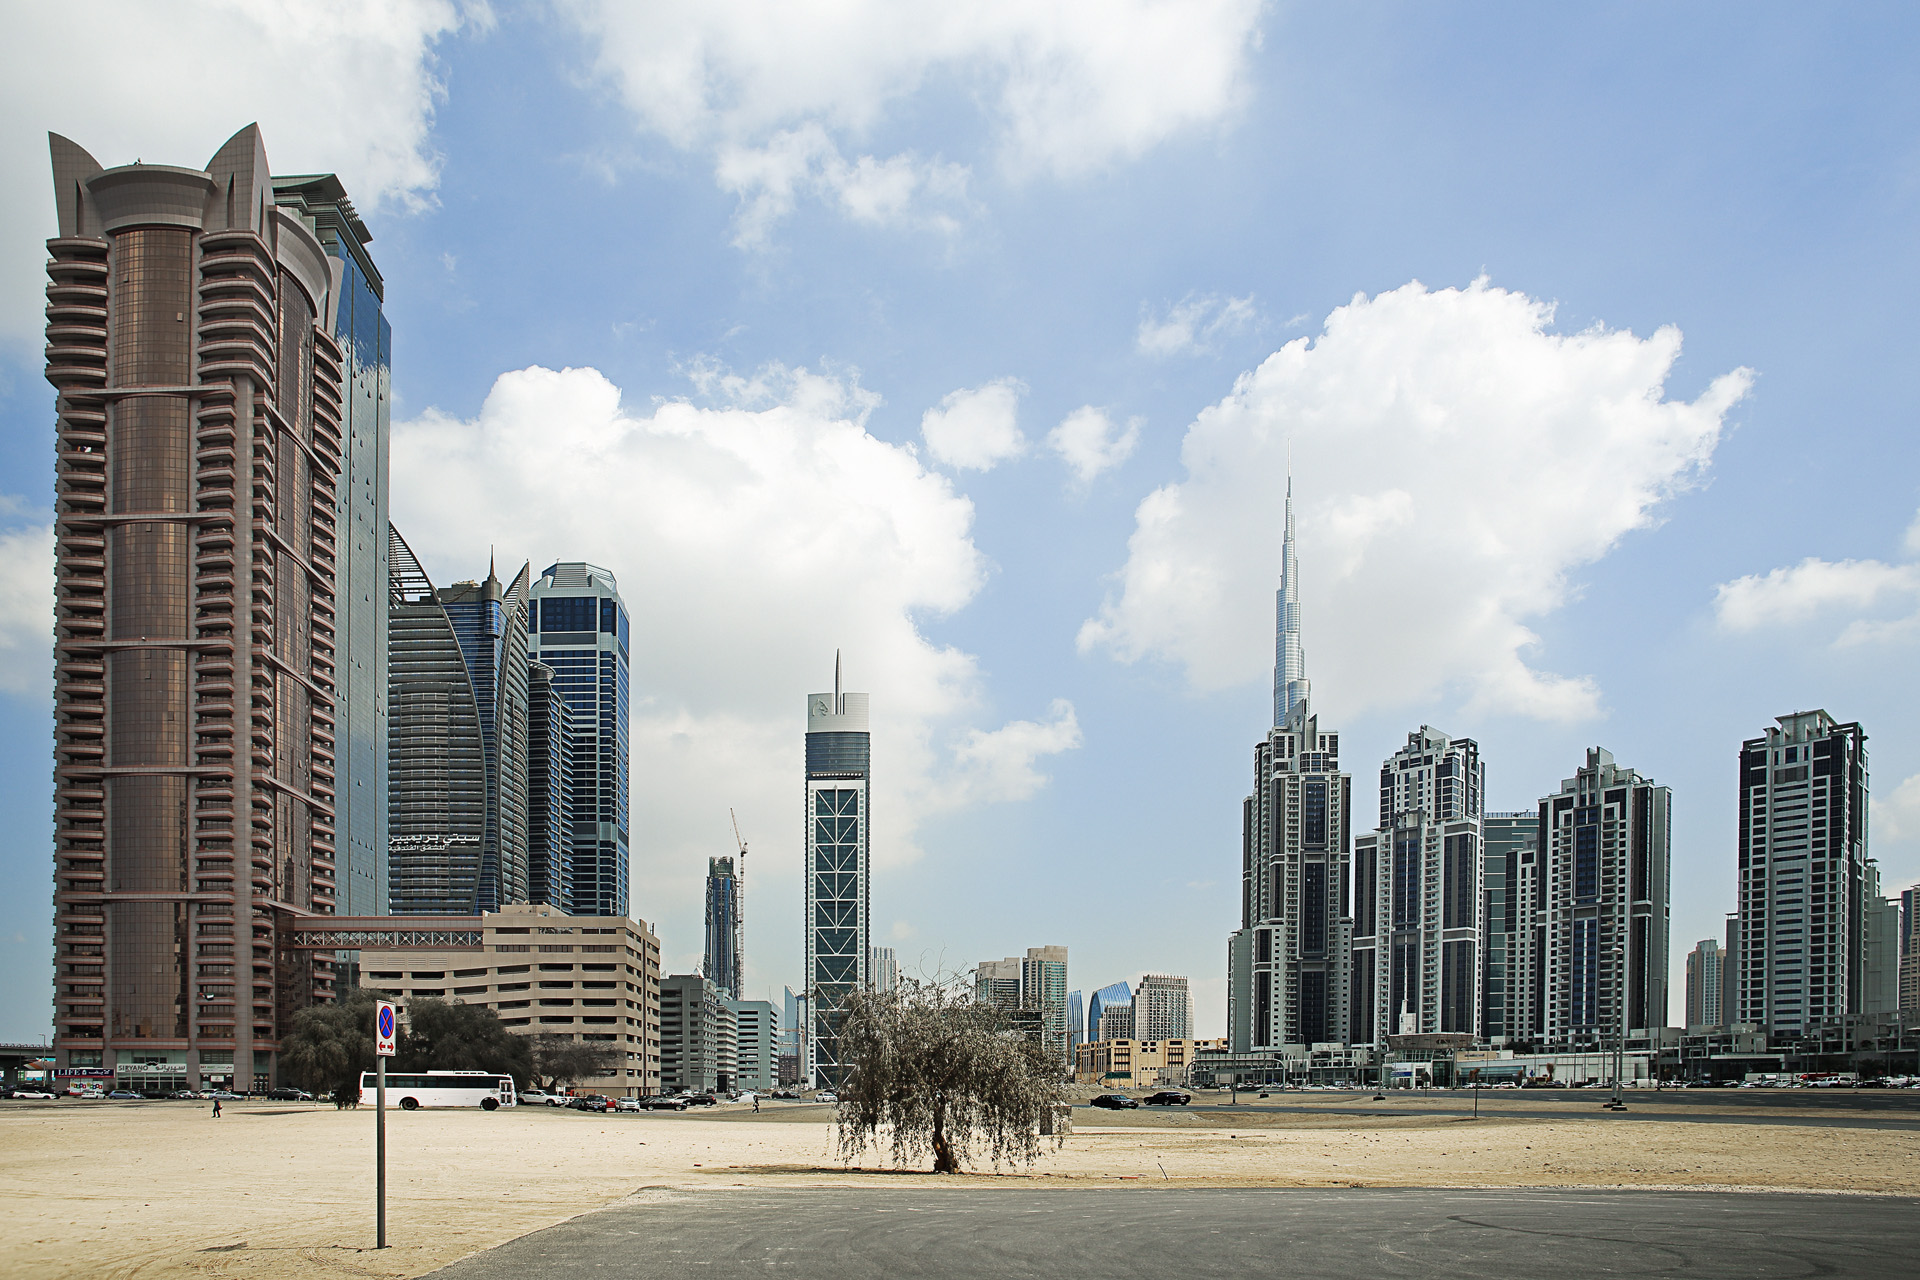  S�rie Trees du projet Beyond r�alis�e en f�vrier 2014 � Dubai 